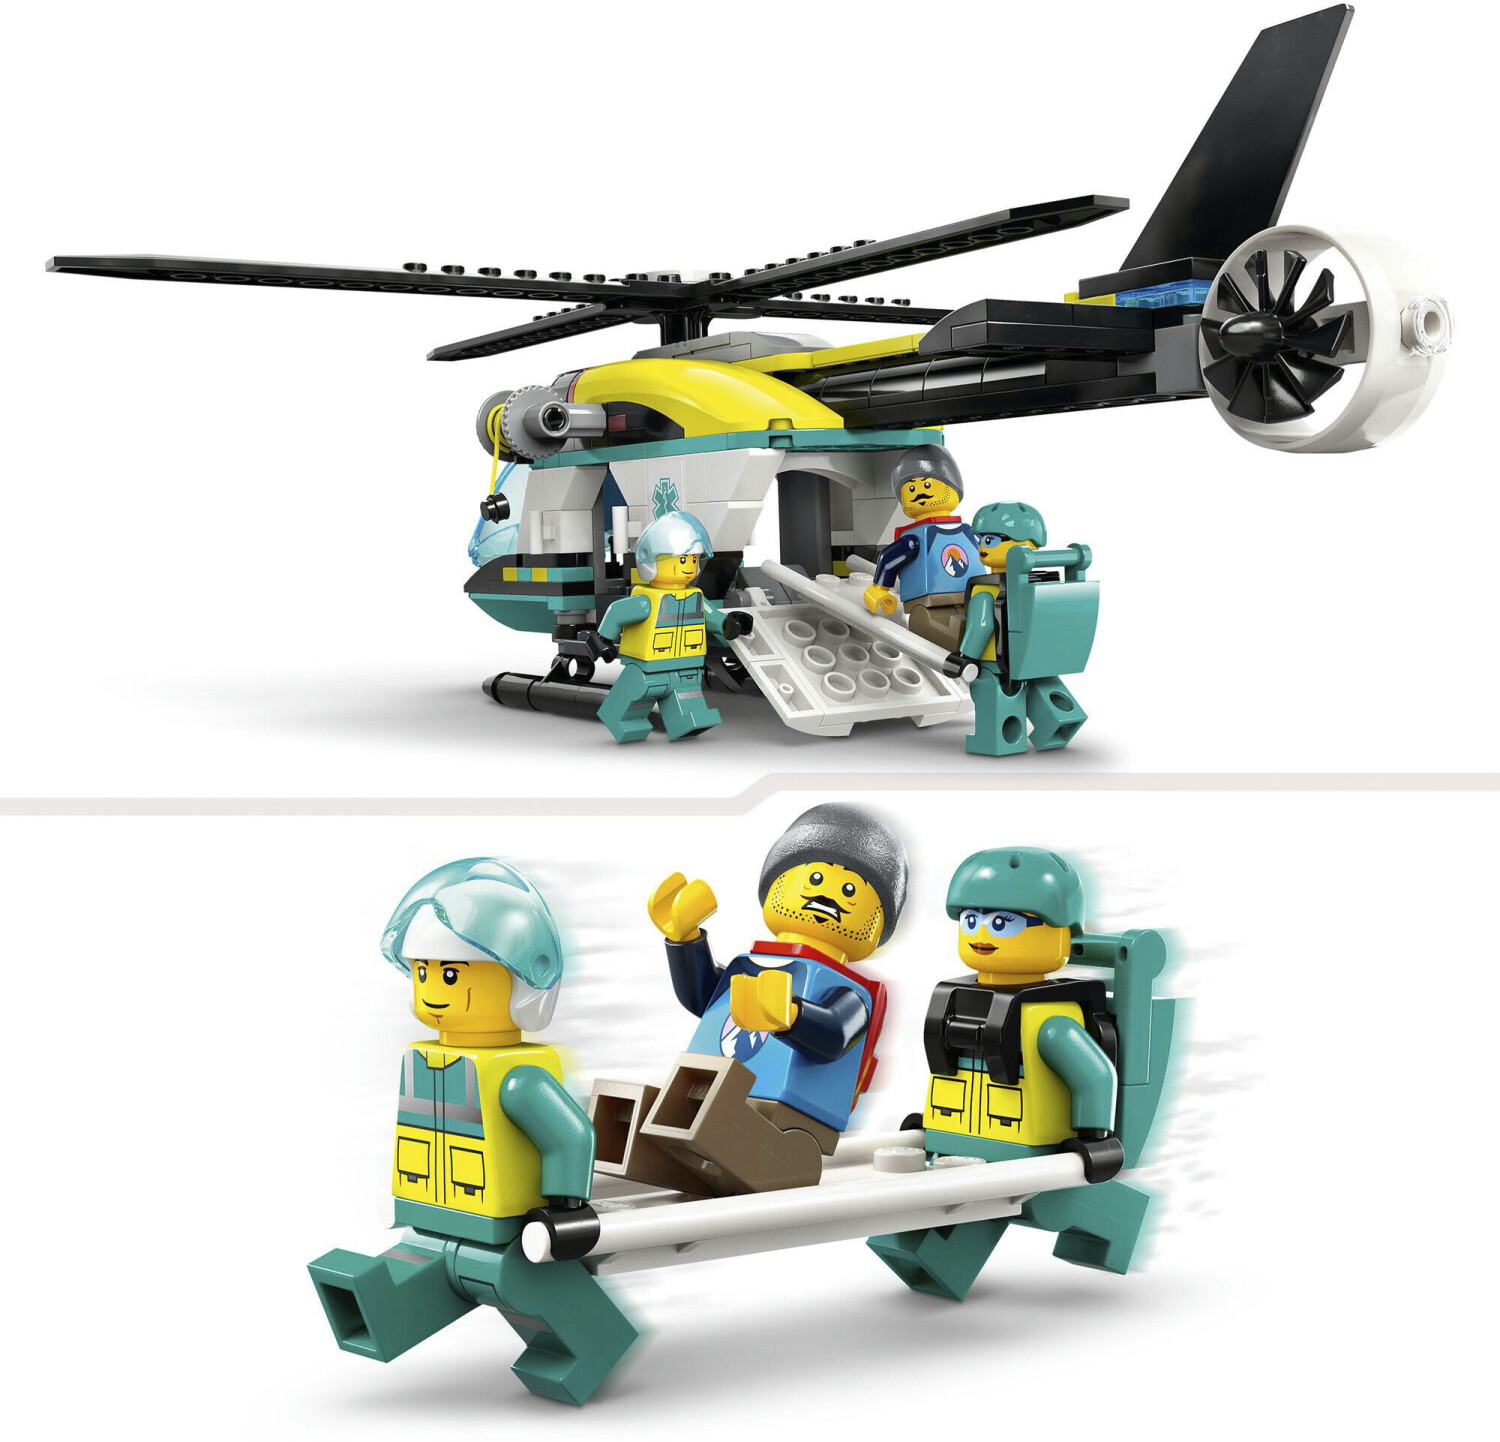 LEGO Creator 31146 Le Camion Remorque avec Hélicoptère